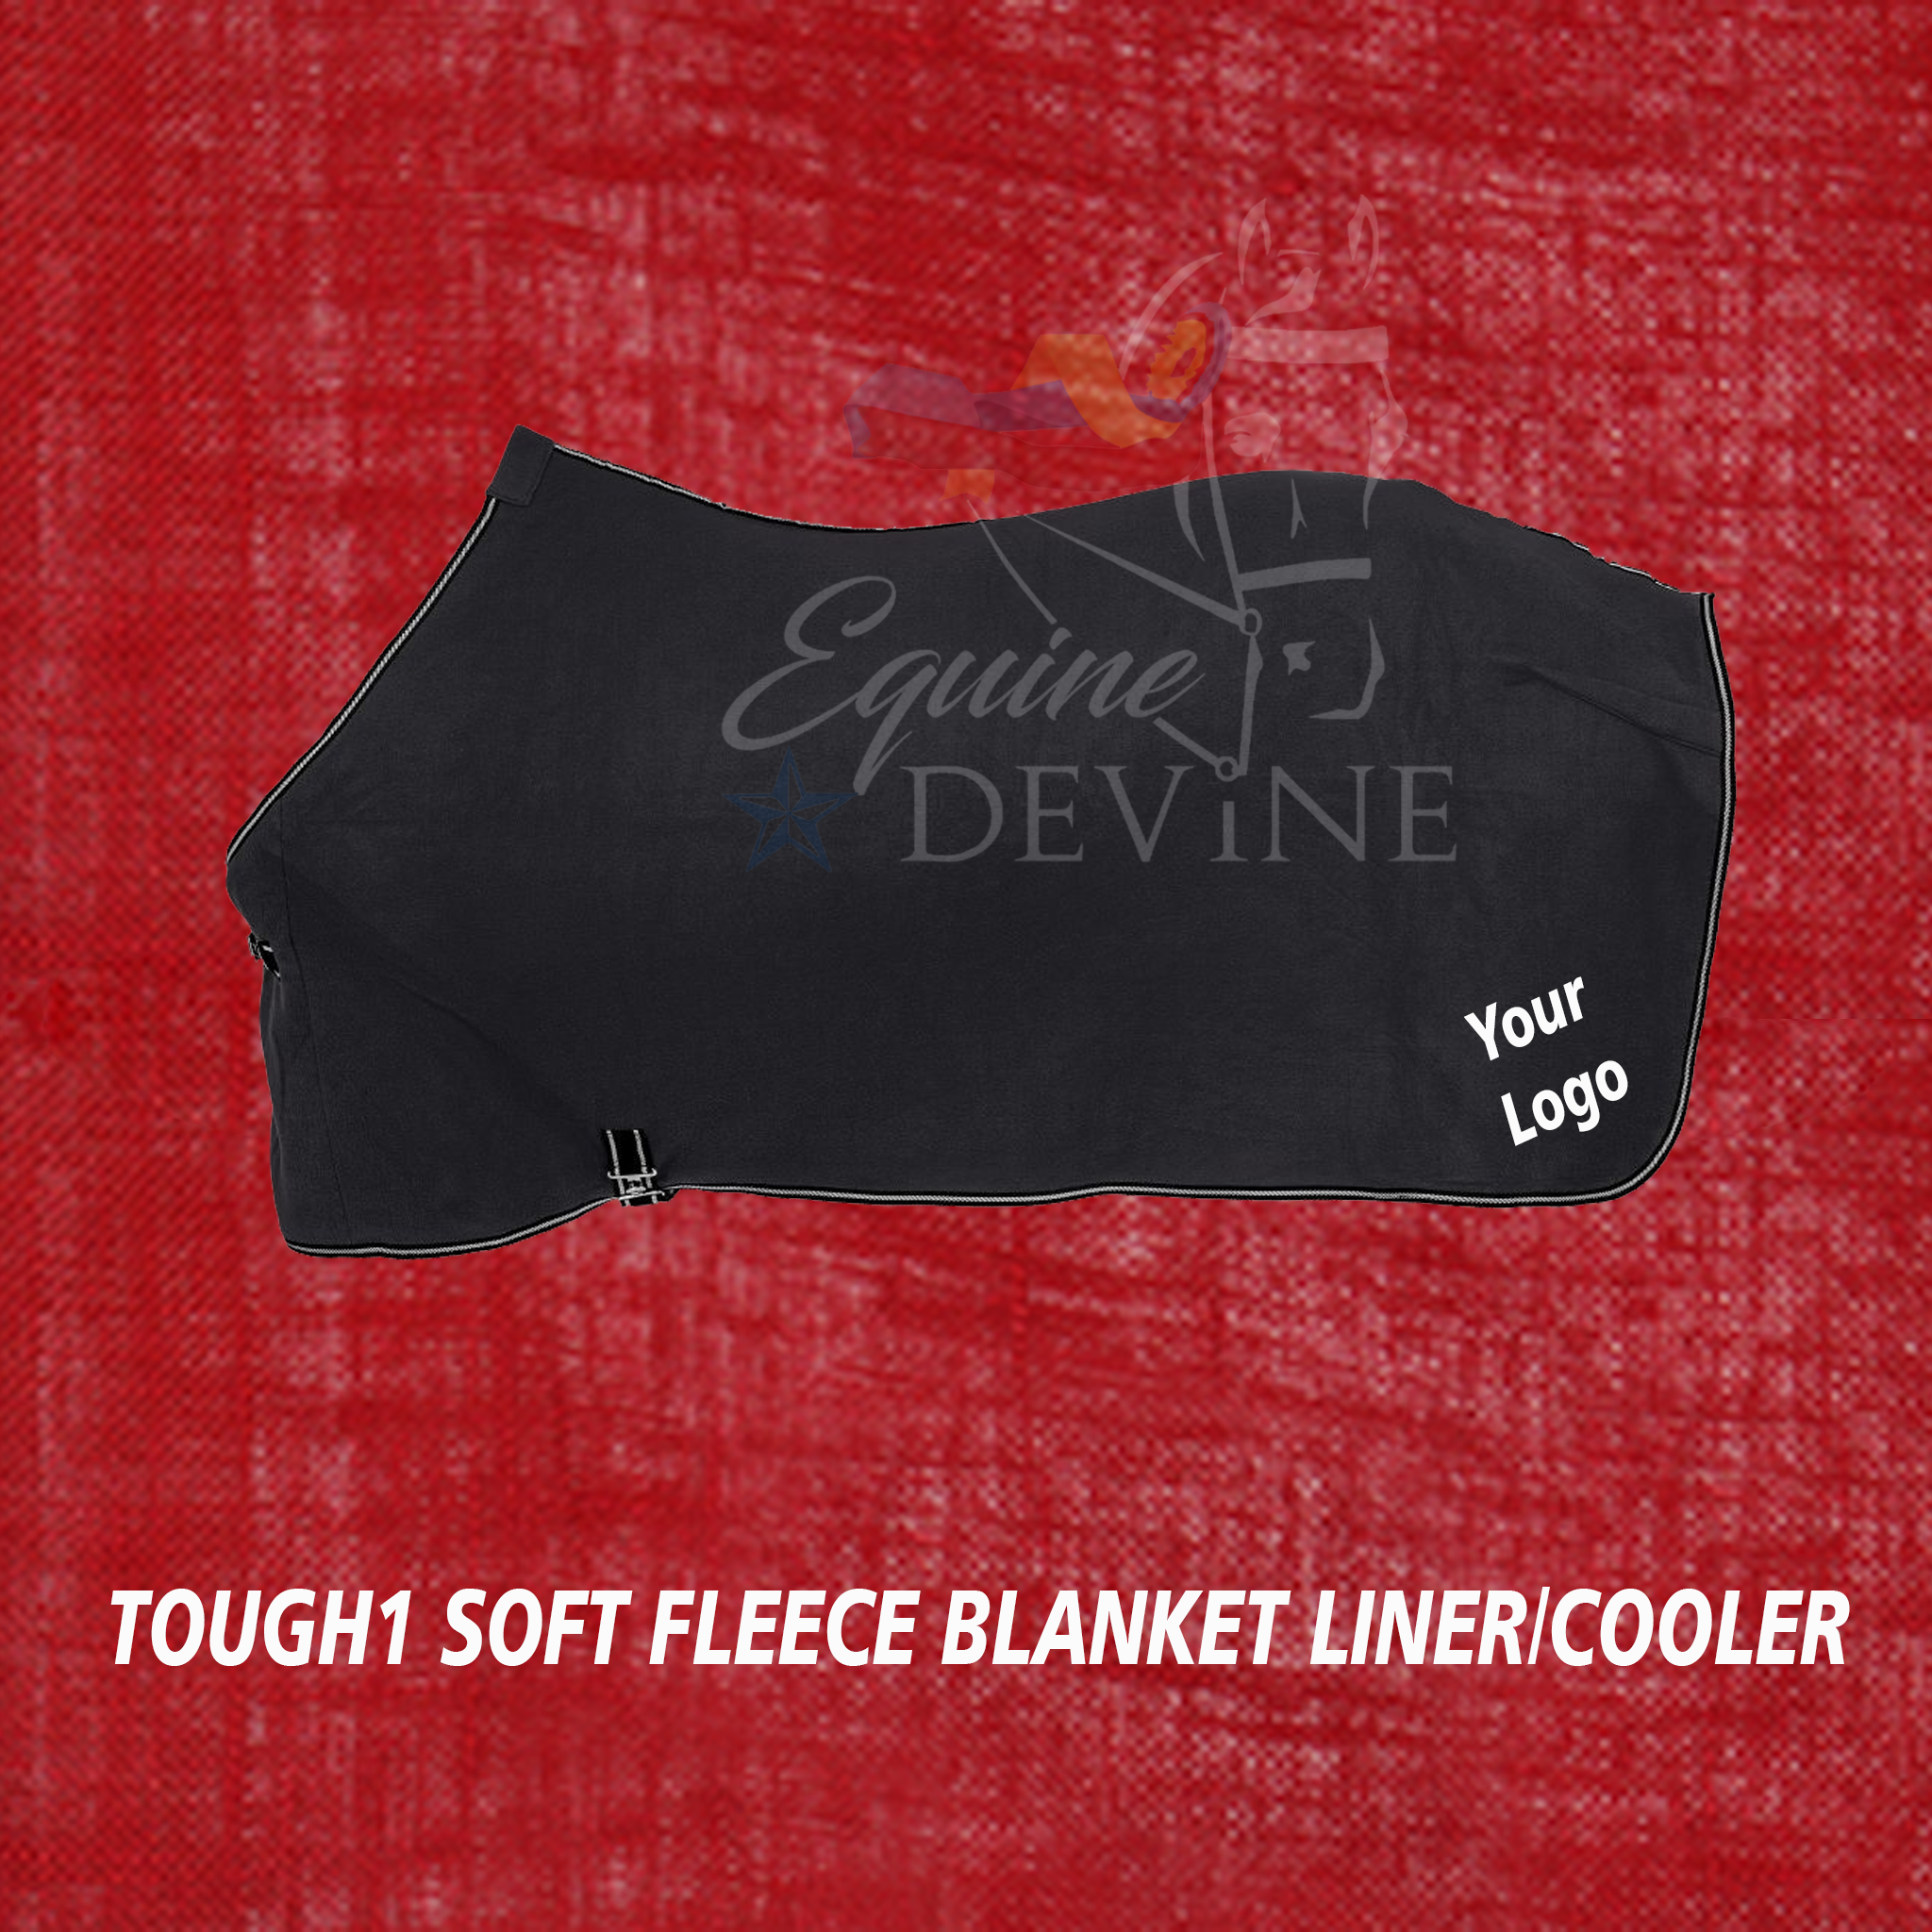 Embroidered TOUGH1 Softfleece Blanket Liner/Cooler